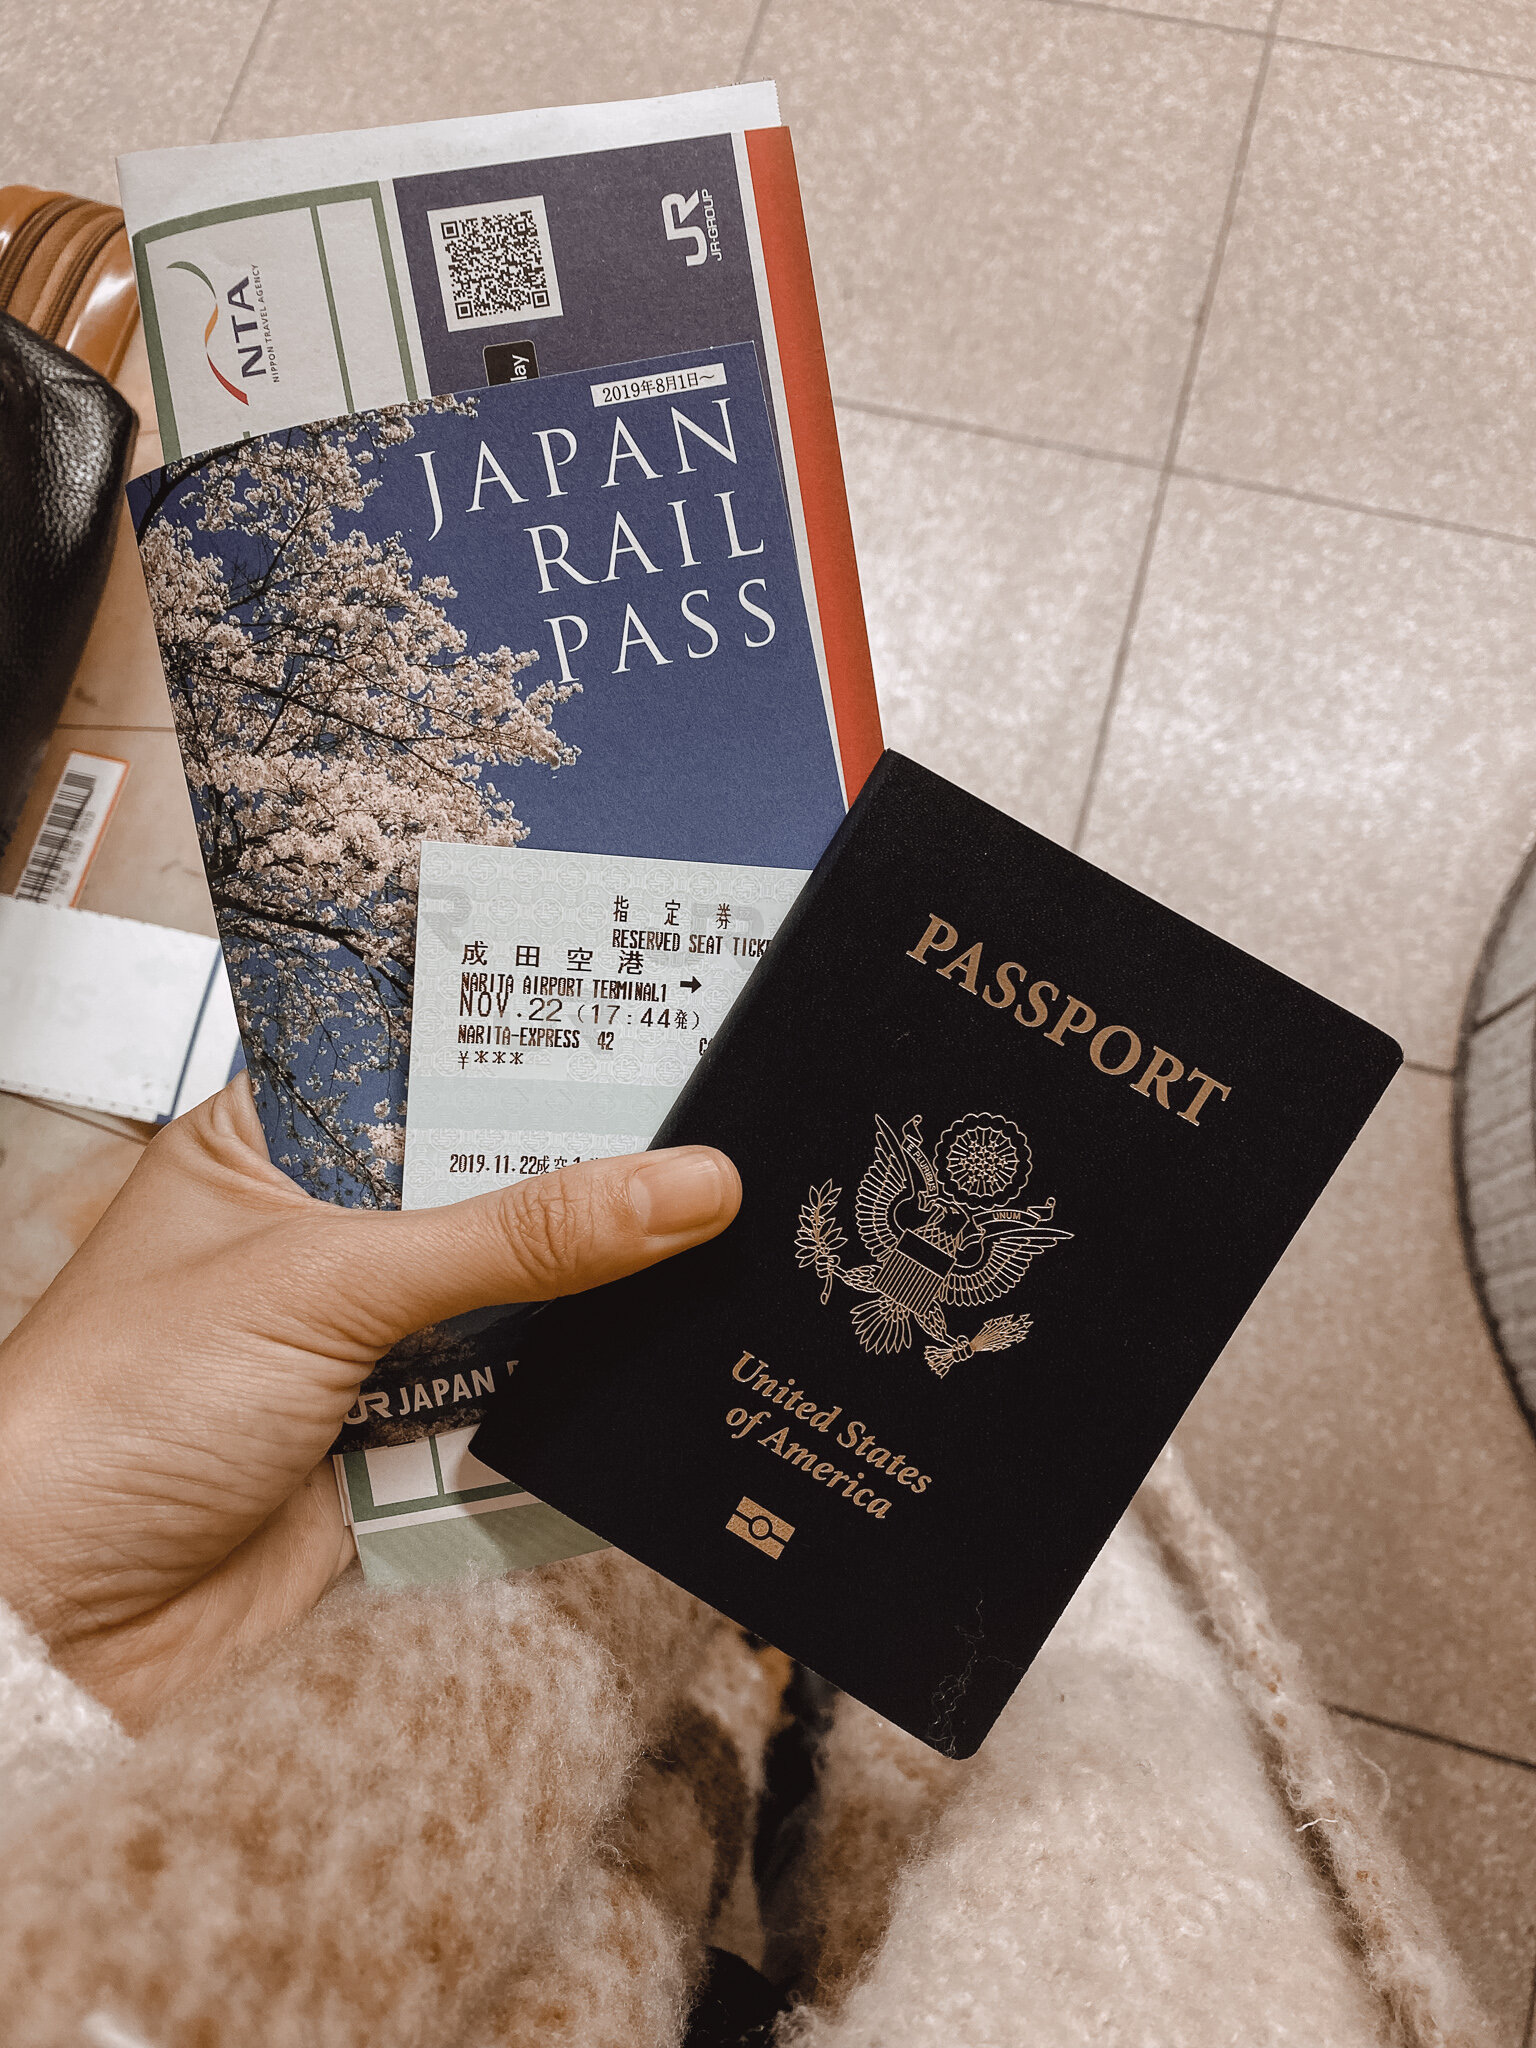 Japan Rail Pass and Passport